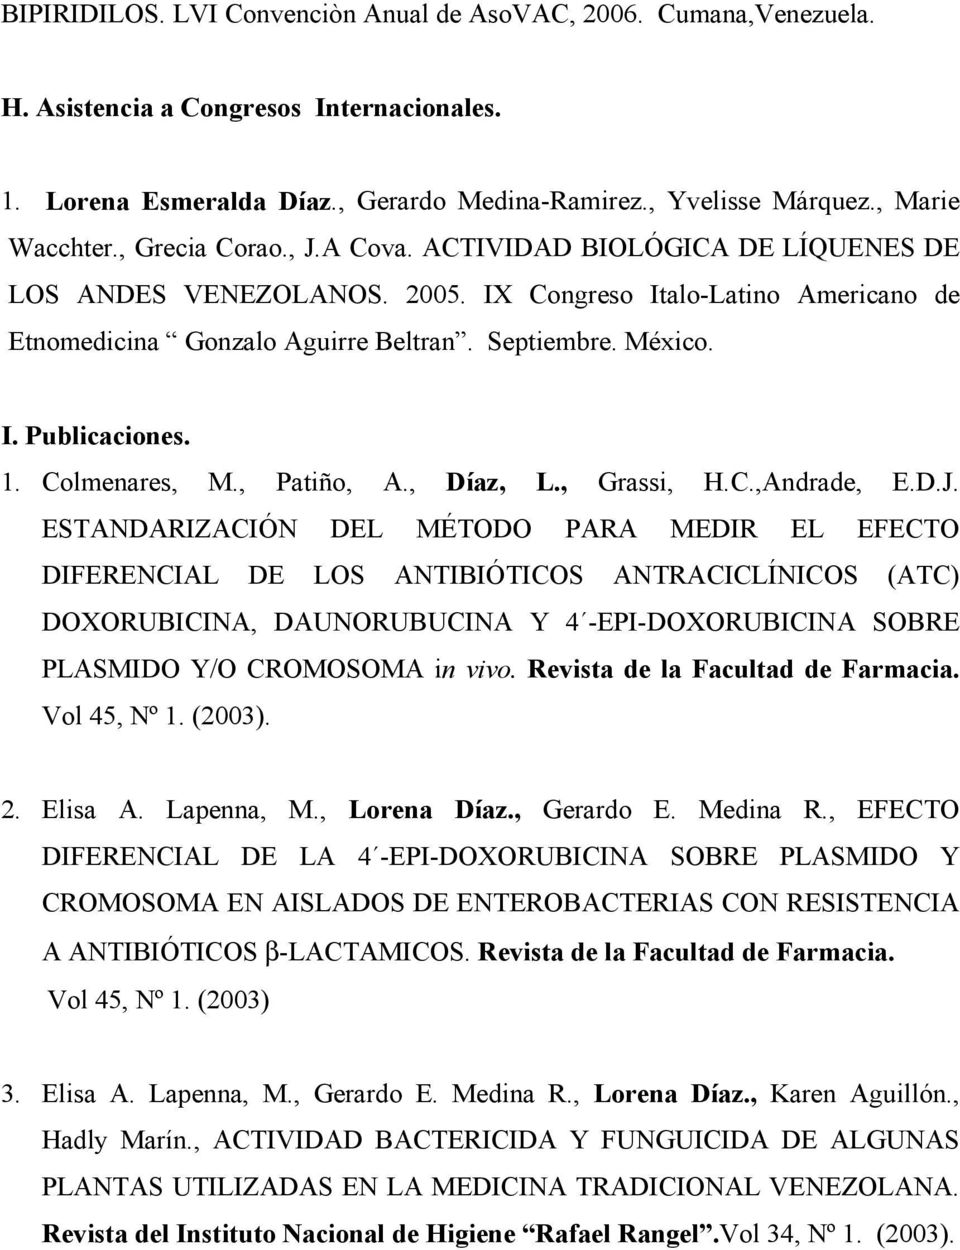 1. Colmenares, M., Patiño, A., Díaz, L., Grassi, H.C.,Andrade, E.D.J.